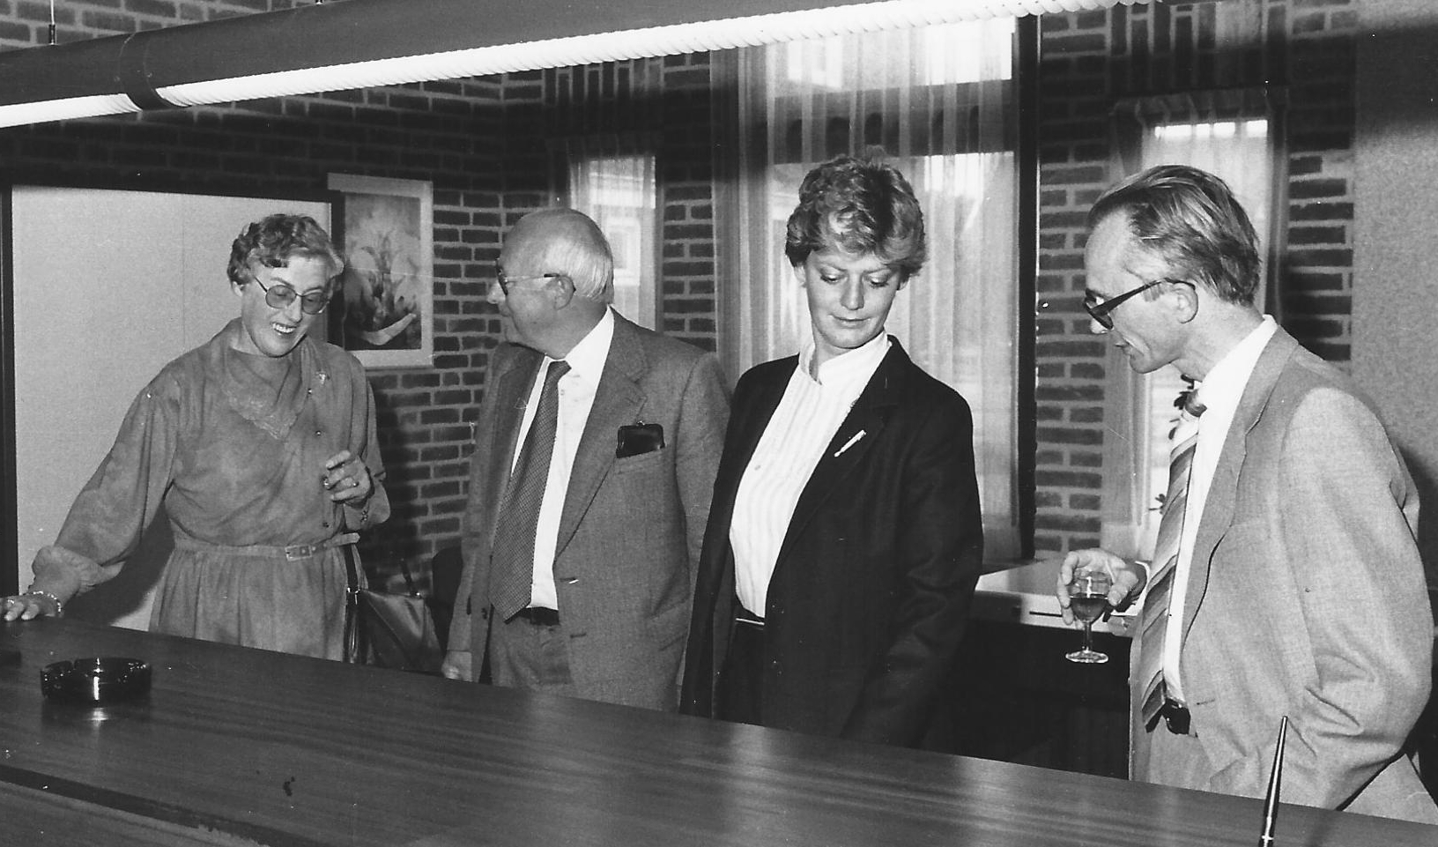 1982: de balie van de afdeling bevolking tijdens de heropening na uitbreiding van het gemeentehuis Maartensdijk. V.l.n.r. de toen gepensioneerde Juffrouw Klaassen, de Heer G. Kuipers gepensioneerde gemeentesecretaris, Gerda Mobach, en Jan Scheidemans, ambtenaar milieu.